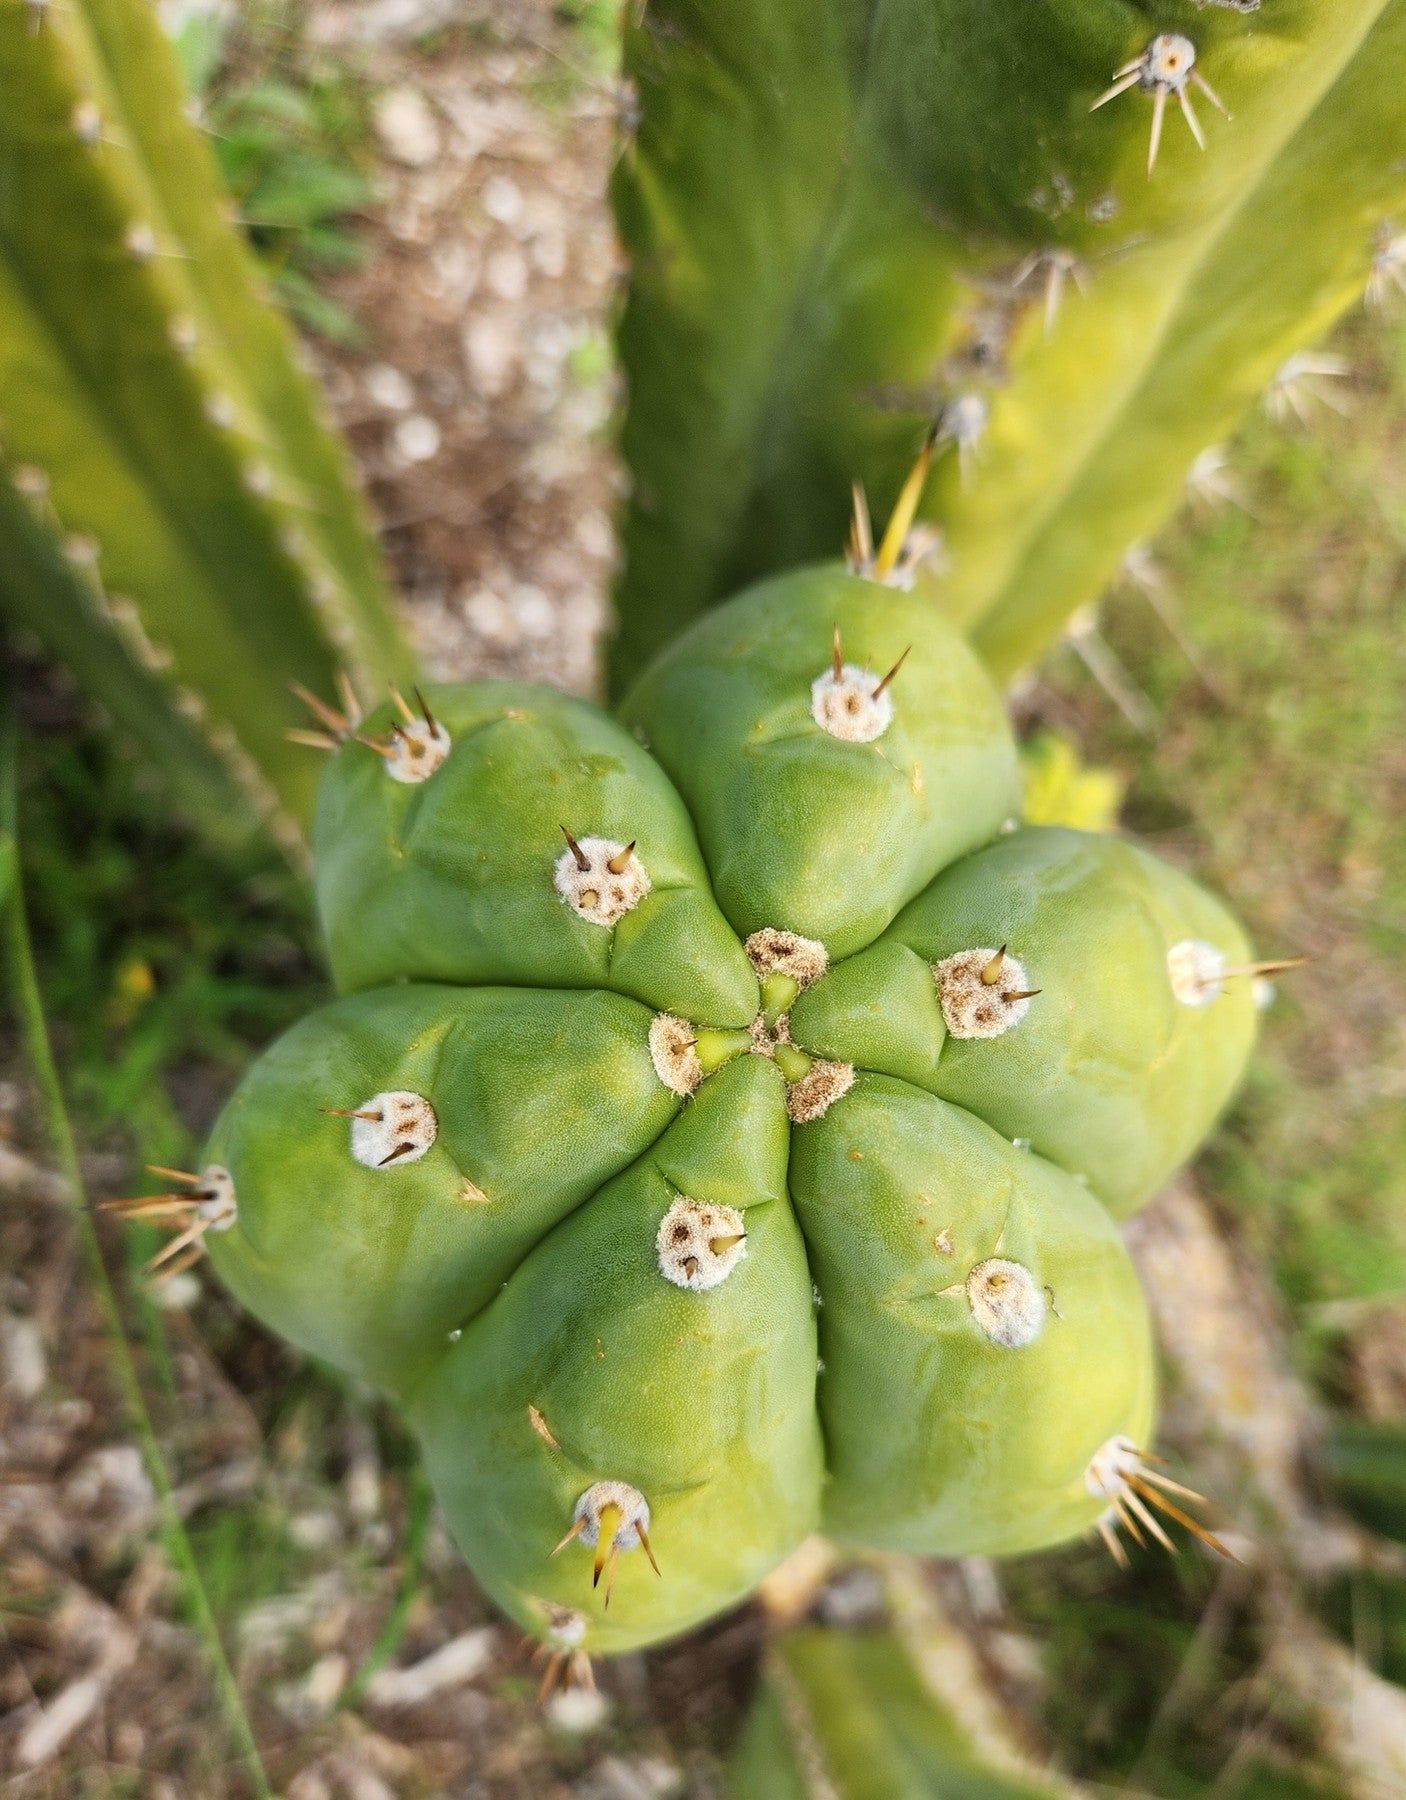 #EC300 EXACT Trichocereus Pachanoi "Phat Pach" Cactus Cutting-Cactus - Large - Exact-The Succulent Source